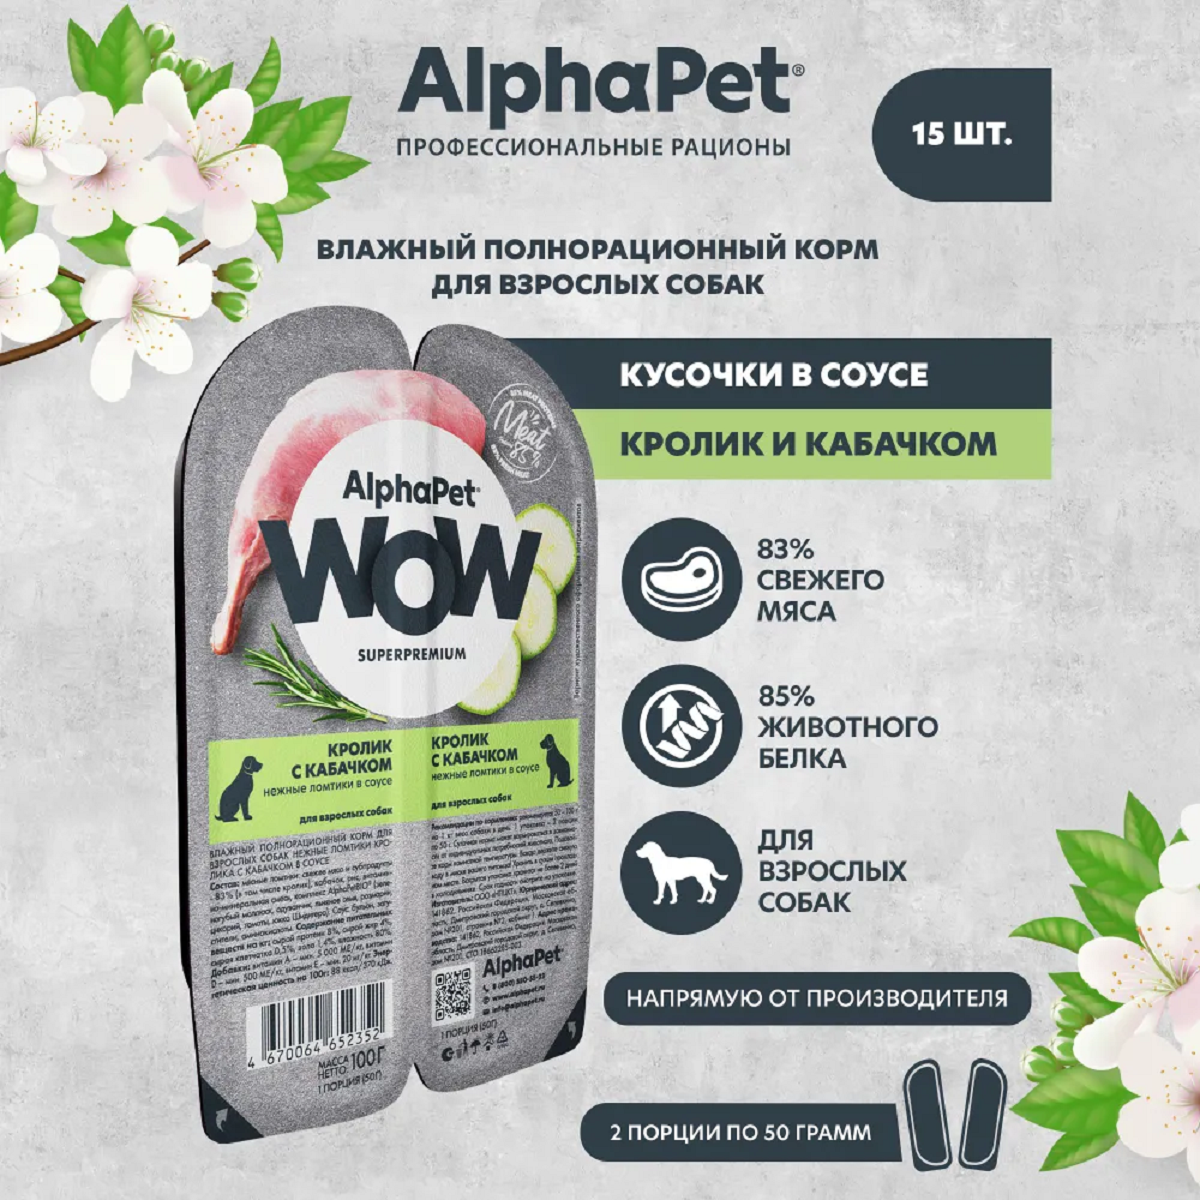 AlphaPet WOW пауч для взрослых собак нежные ломтики в соусе Кролик с кабачком 100г (15 штук)